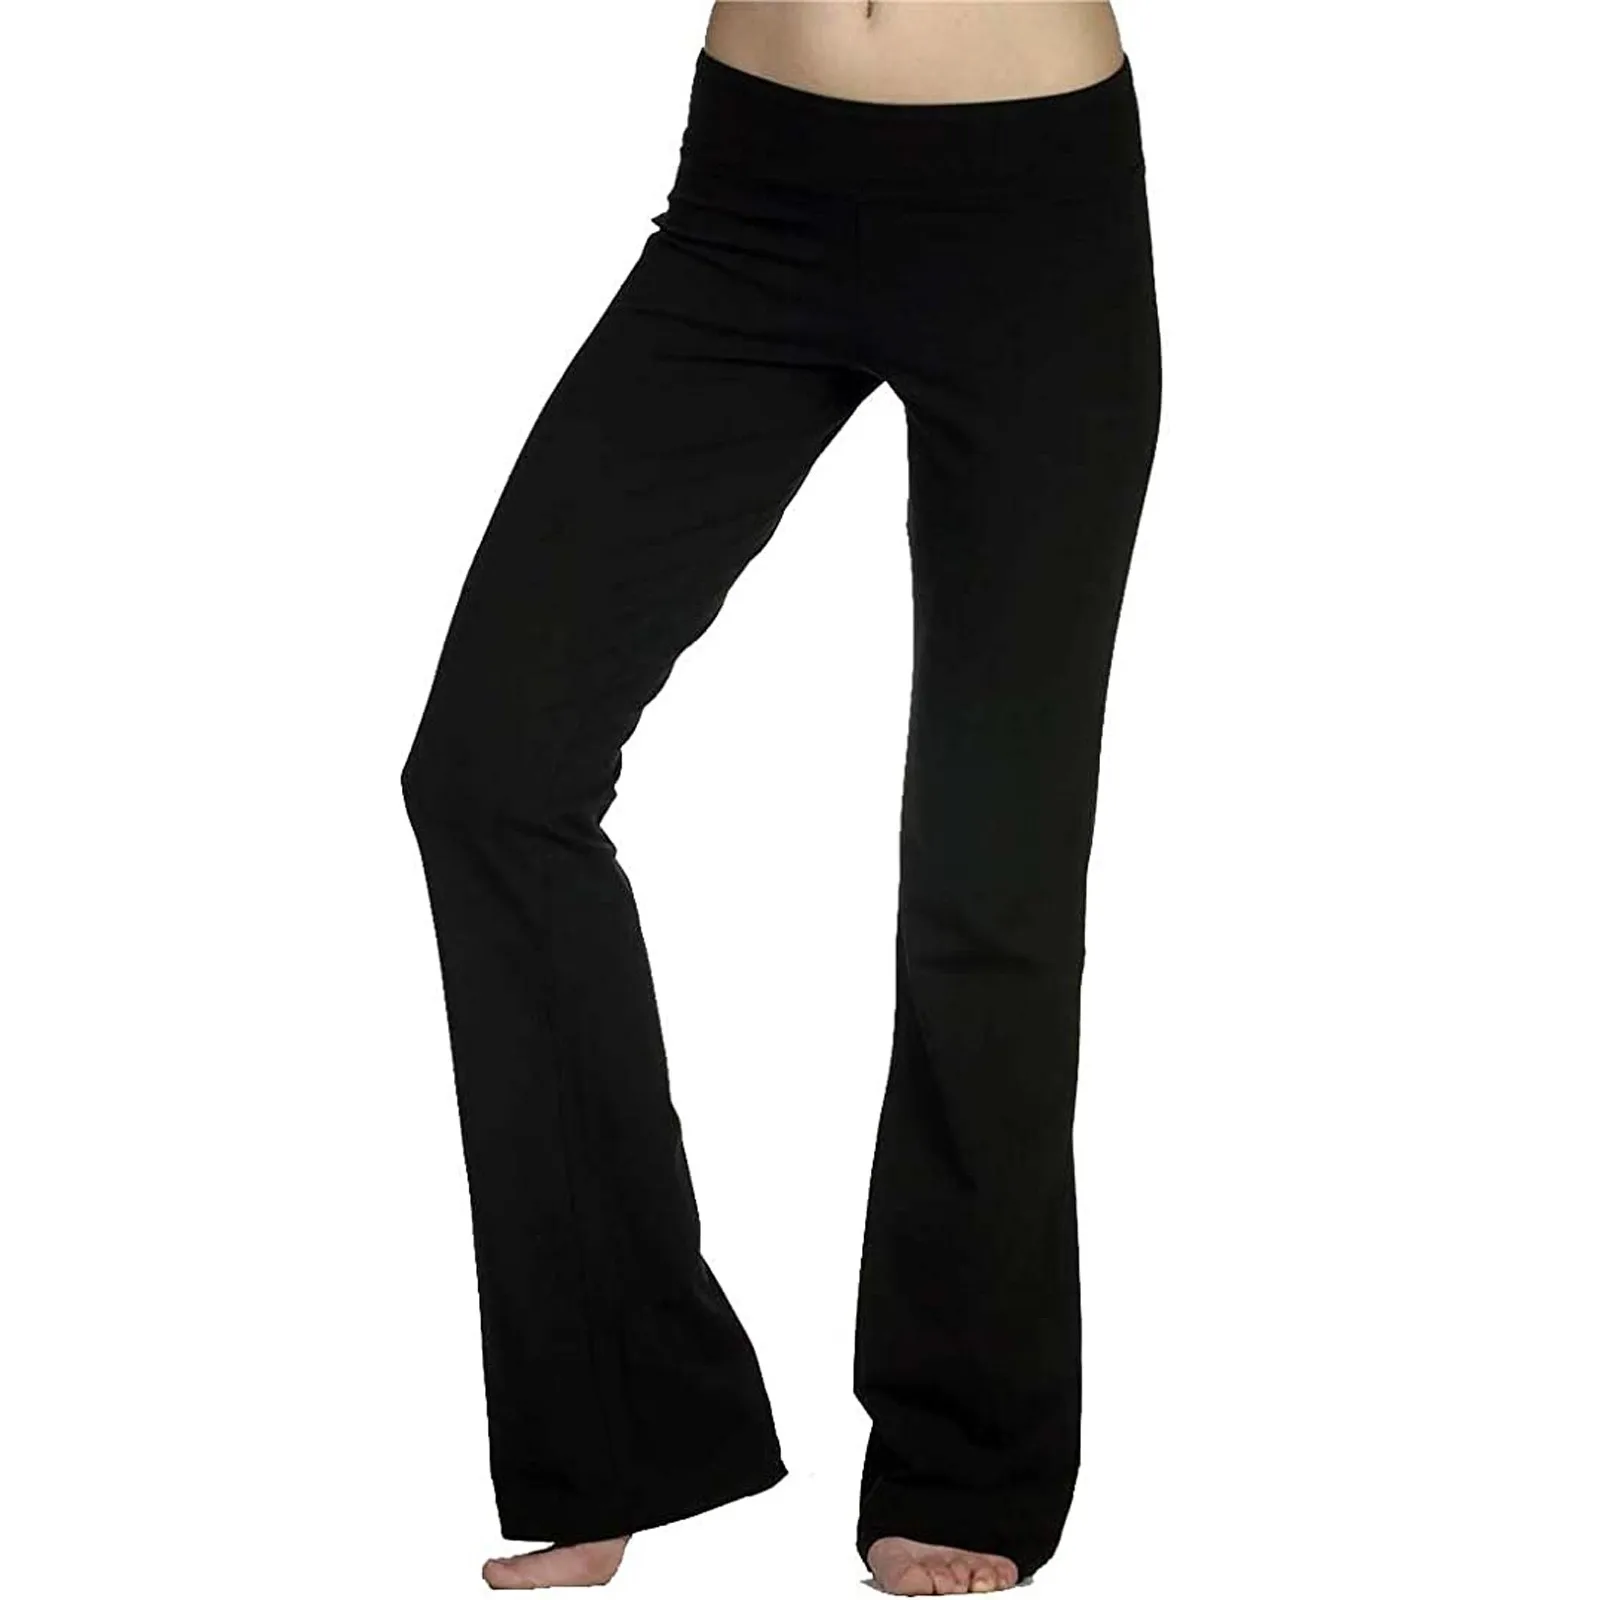 Kadın Streç Yoga Pantolon Katı Yüksek Bel Yoga Tayt Dans Spor Bayan Koşu Spor Pantolon Gevşek Spor Giyim S-3XL Görüntü 1